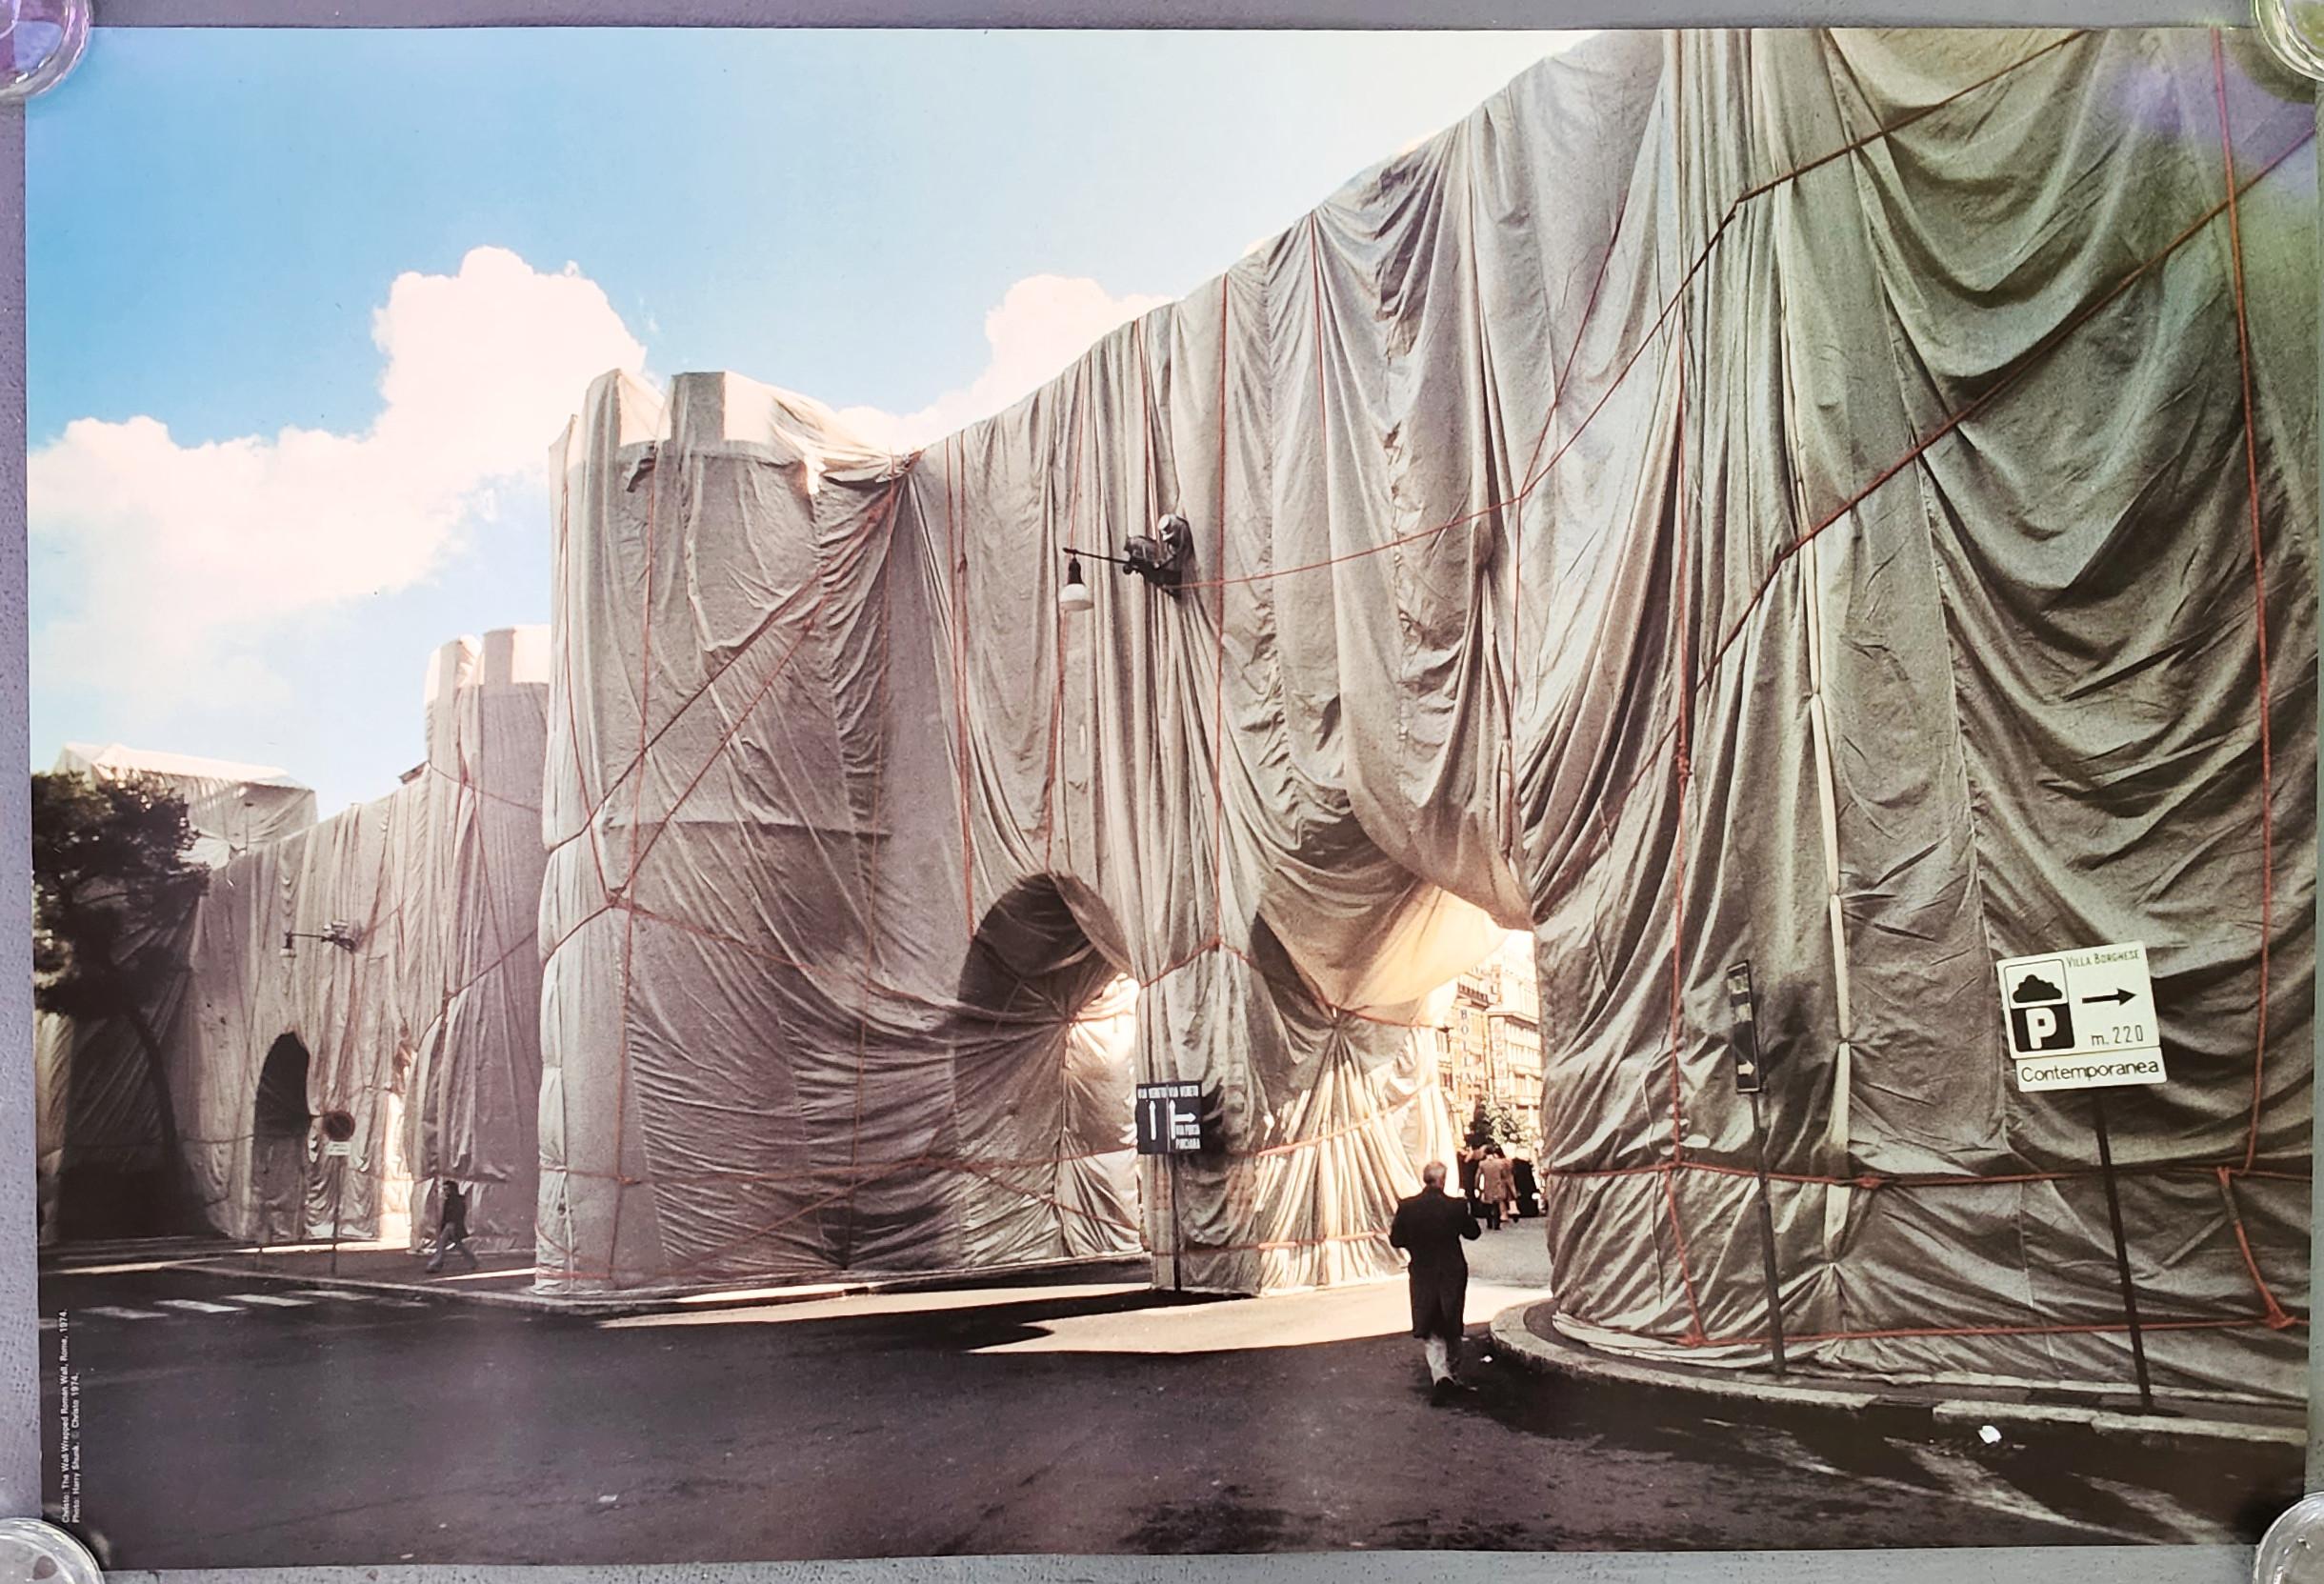 Le mur romain enveloppé, Rome, 1974 (Installation, art public, art enveloppé) - Print de Christo and Jeanne-Claude